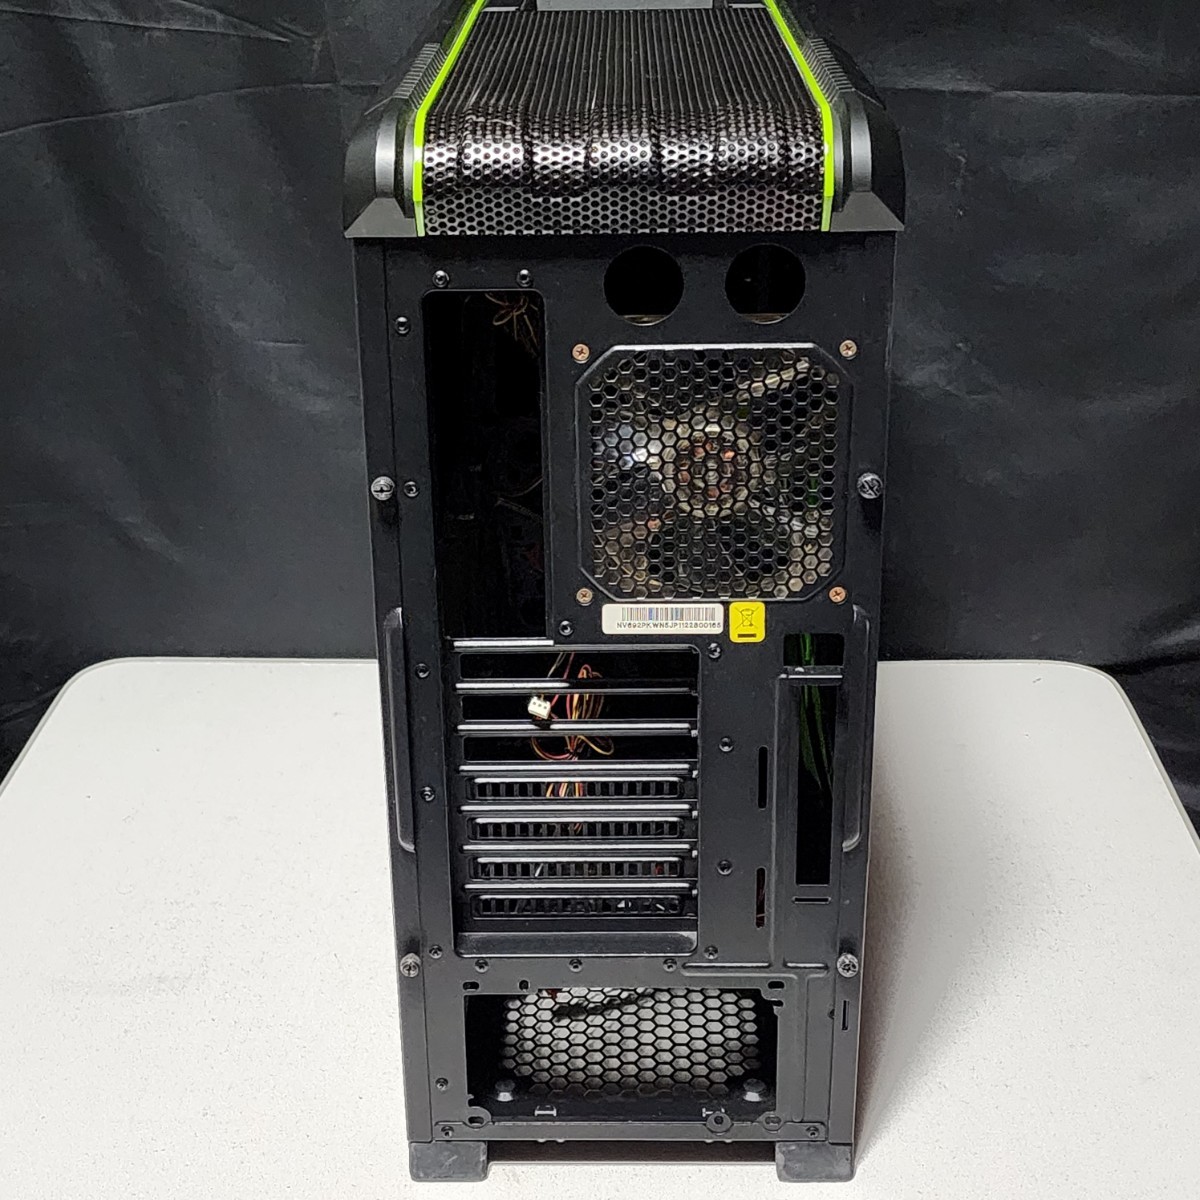 【送料無料】CoolerMaster CM690 II PLUS NVIDIA EDITION Rev2 ミドルタワー型PCケース(ATX)